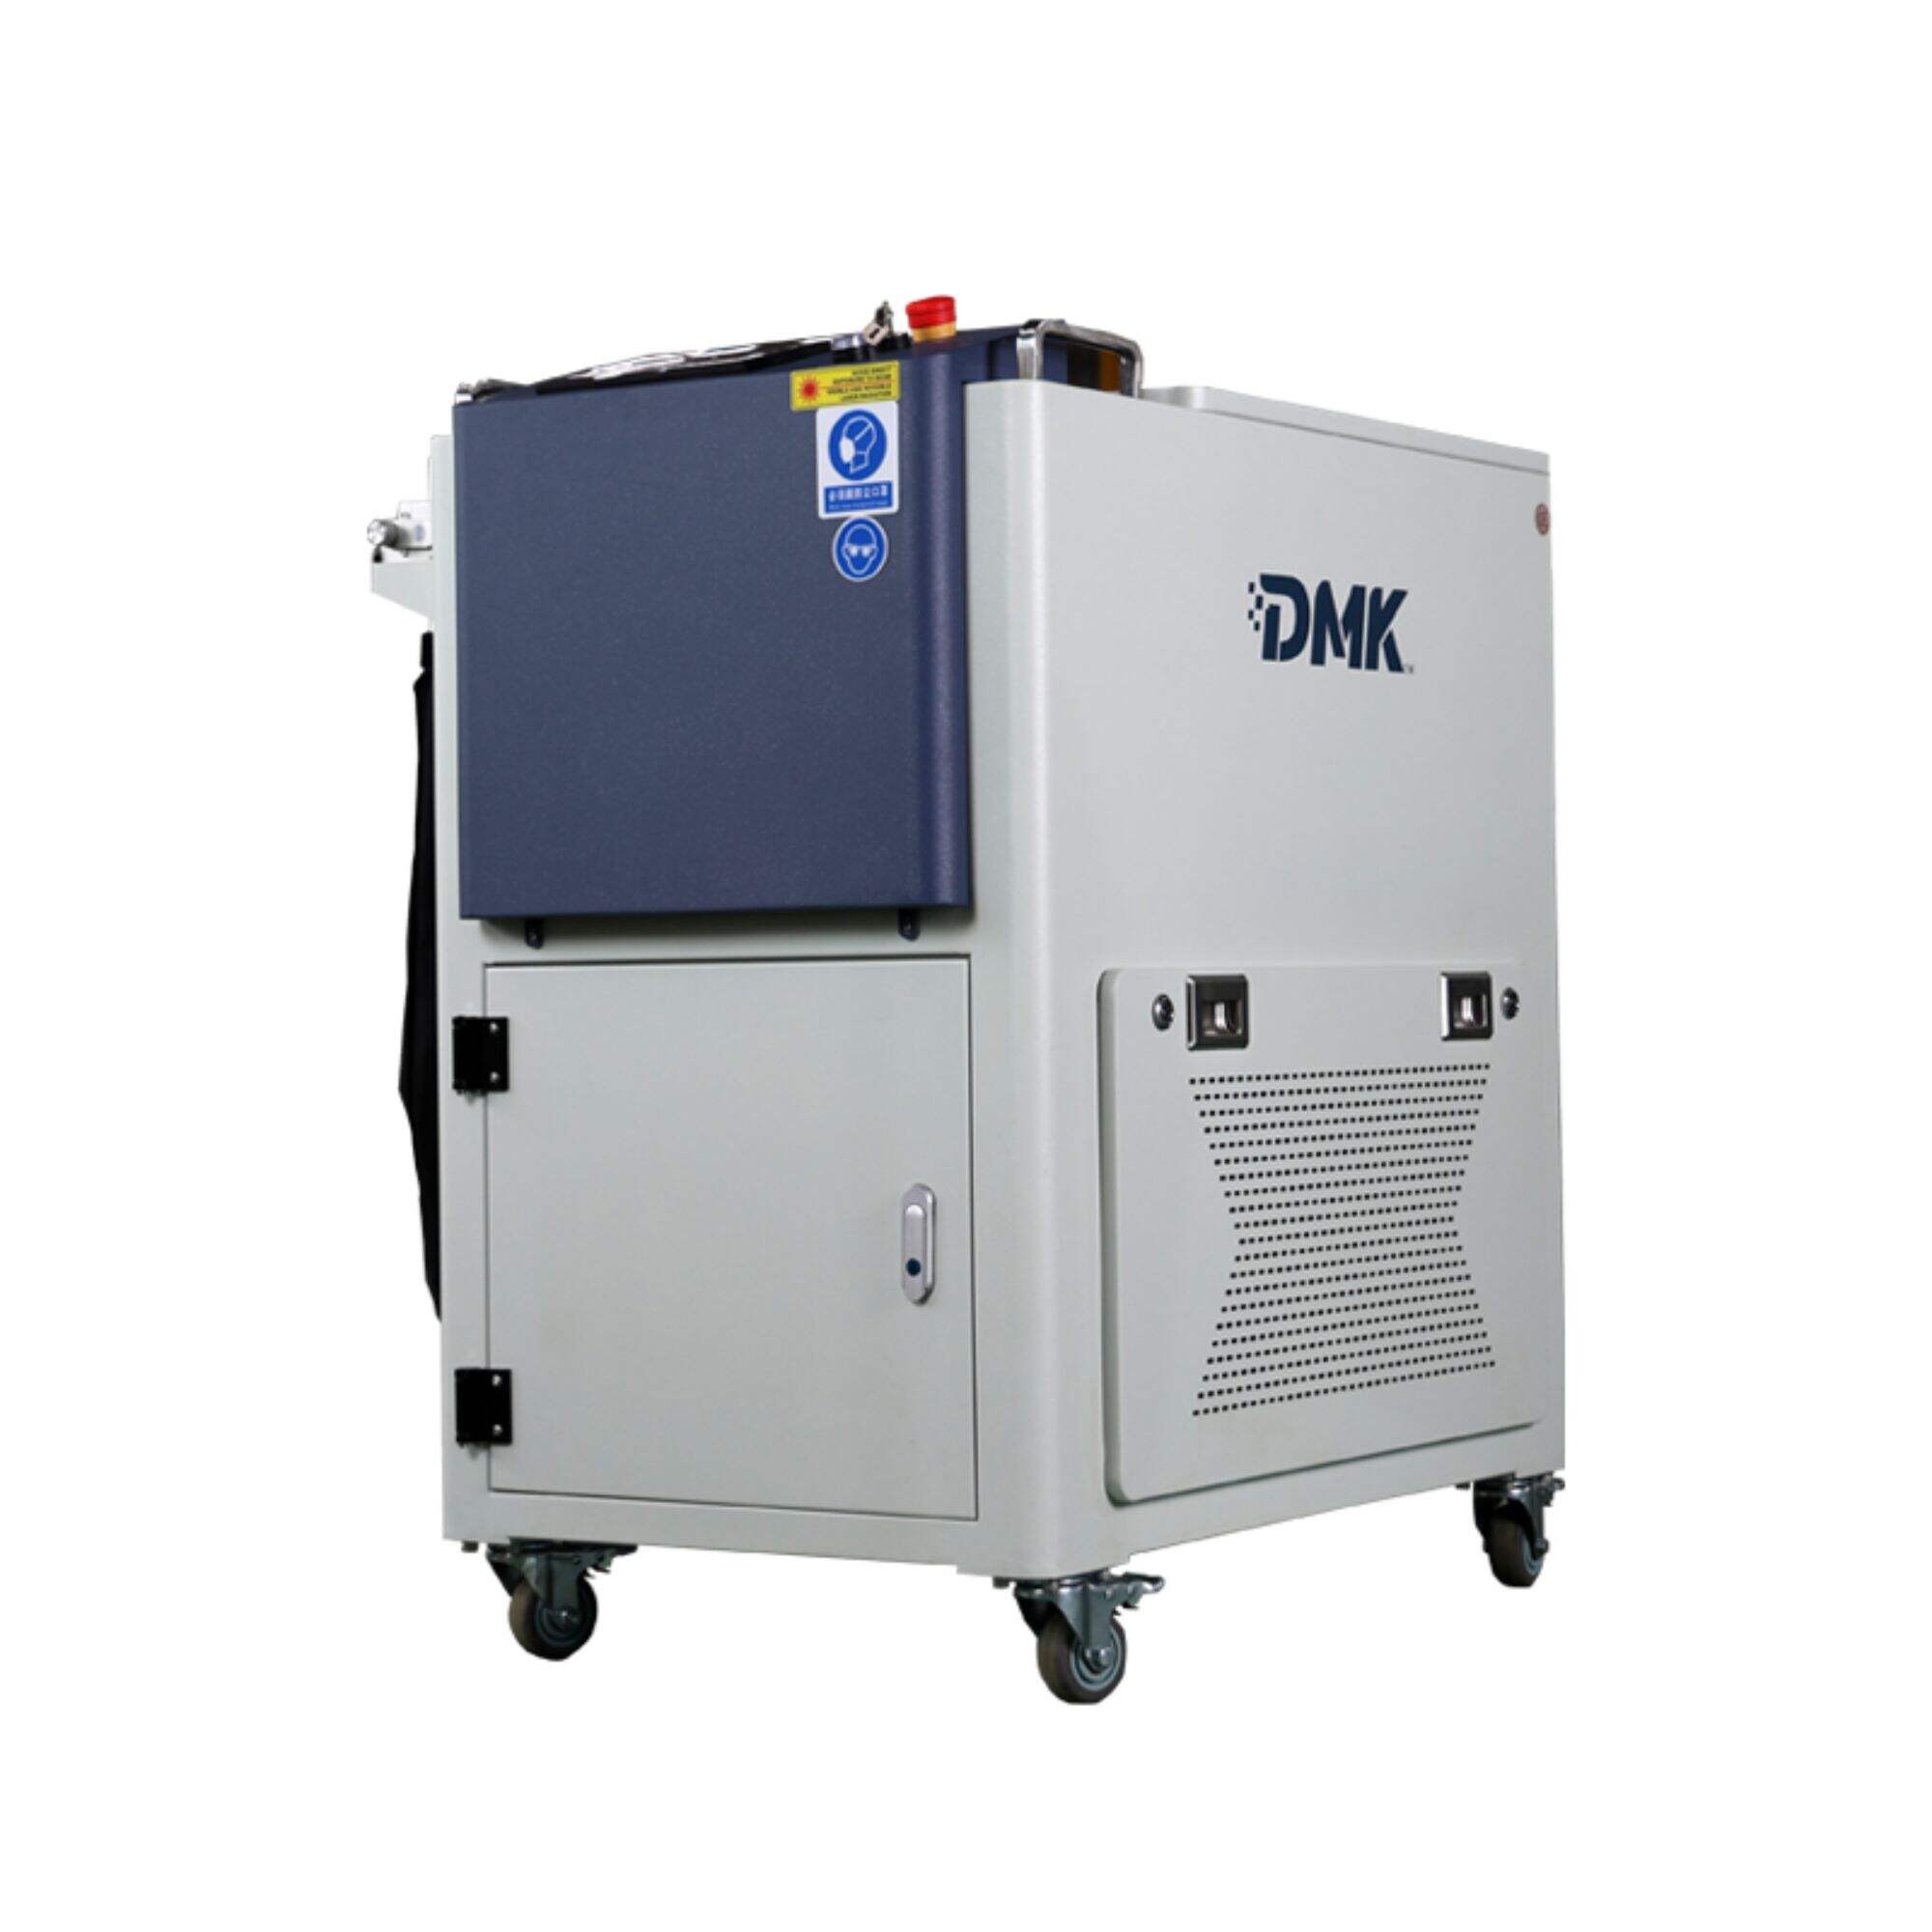 Ręczna maszyna czyszcząca do trawienia laserowego DMK o mocy 2000 W i CW